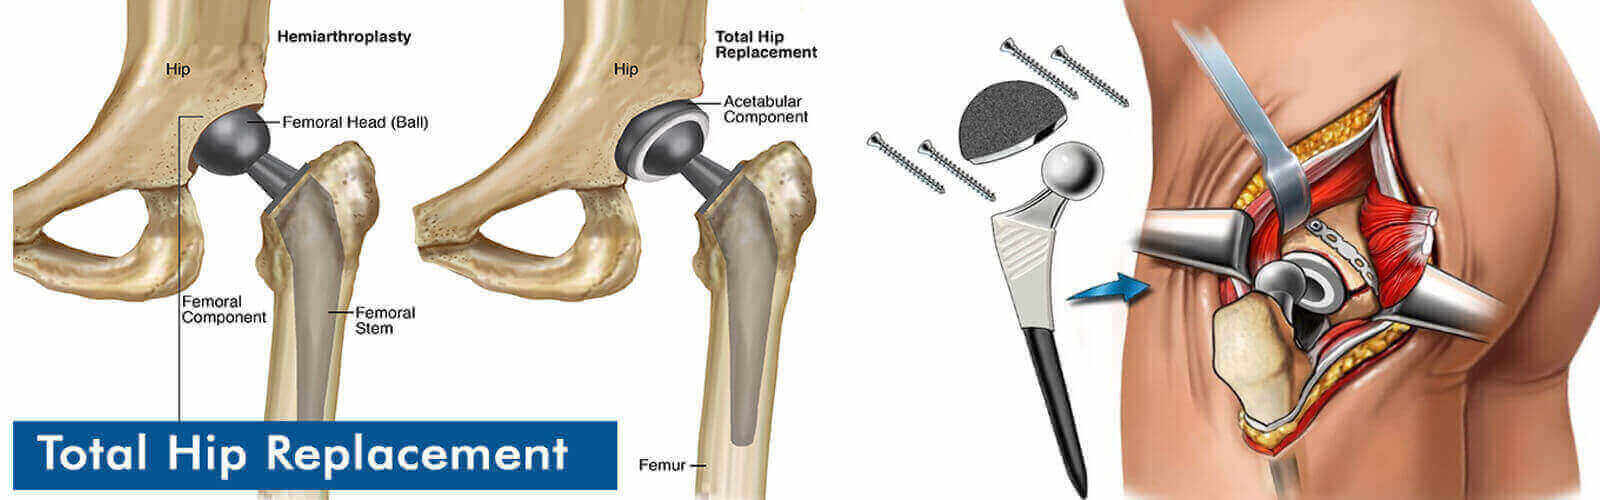 Hip Replacement Surgery Or Hip Resurfacing in Fiji